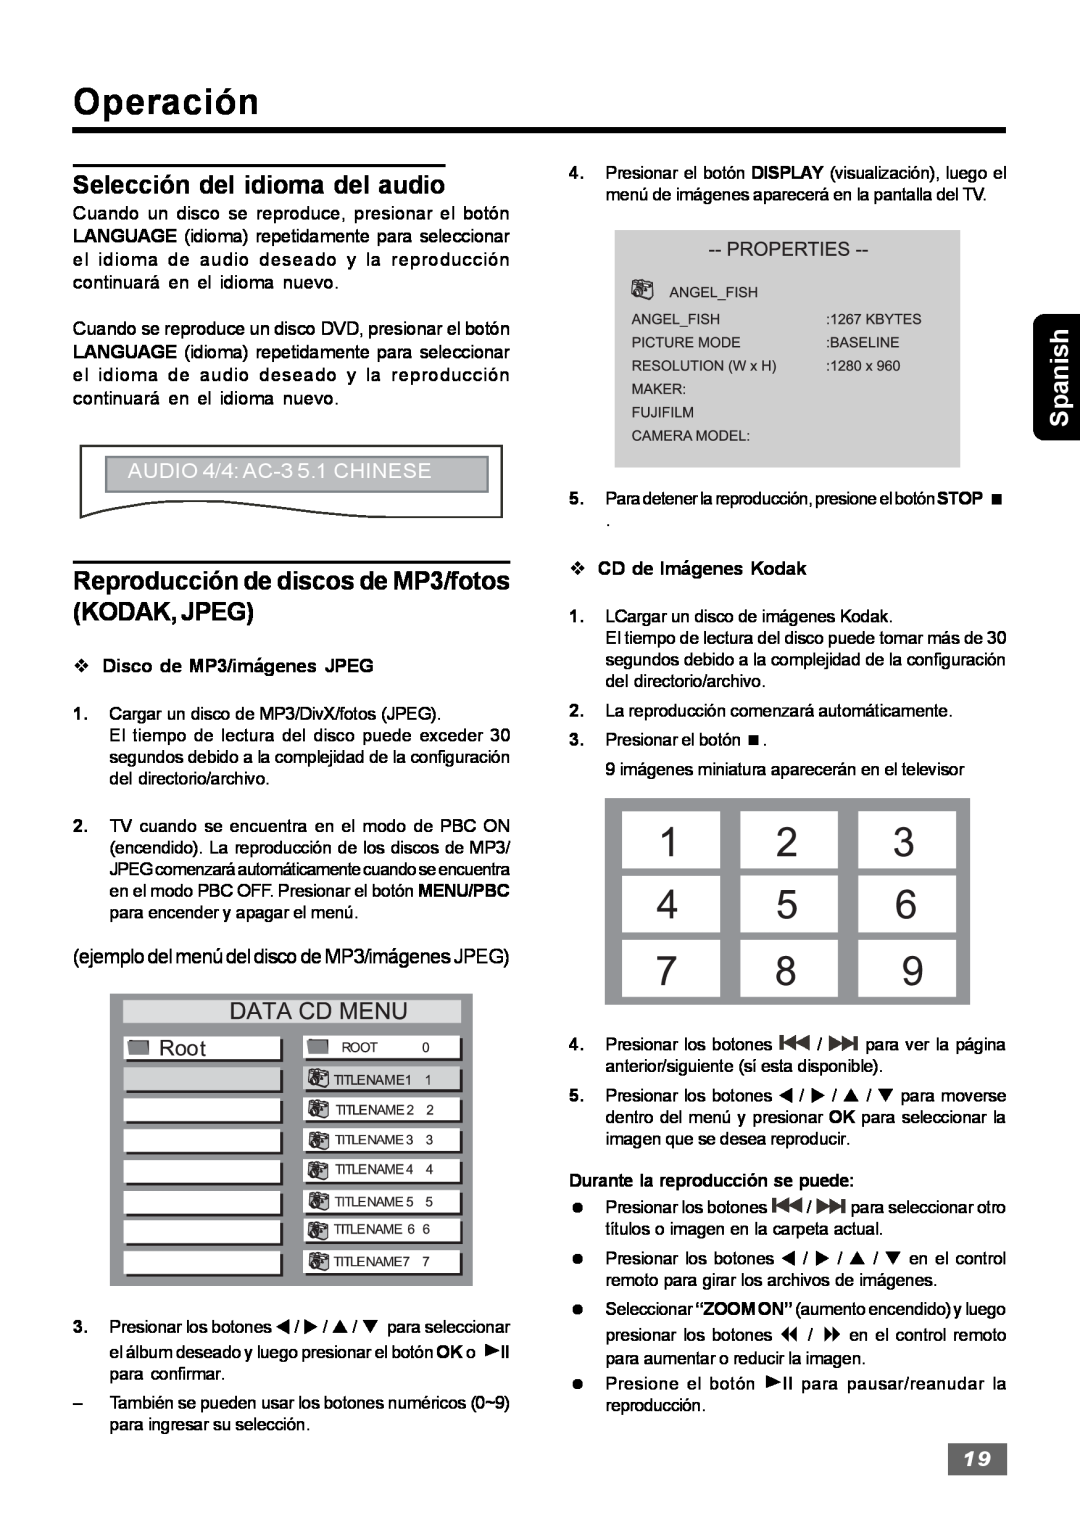 Insignia IS-HTIB102731 Selección del idioma del audio, Reproducción de discos de MP3/fotos KODAK, JPEG, Operación, Spanish 